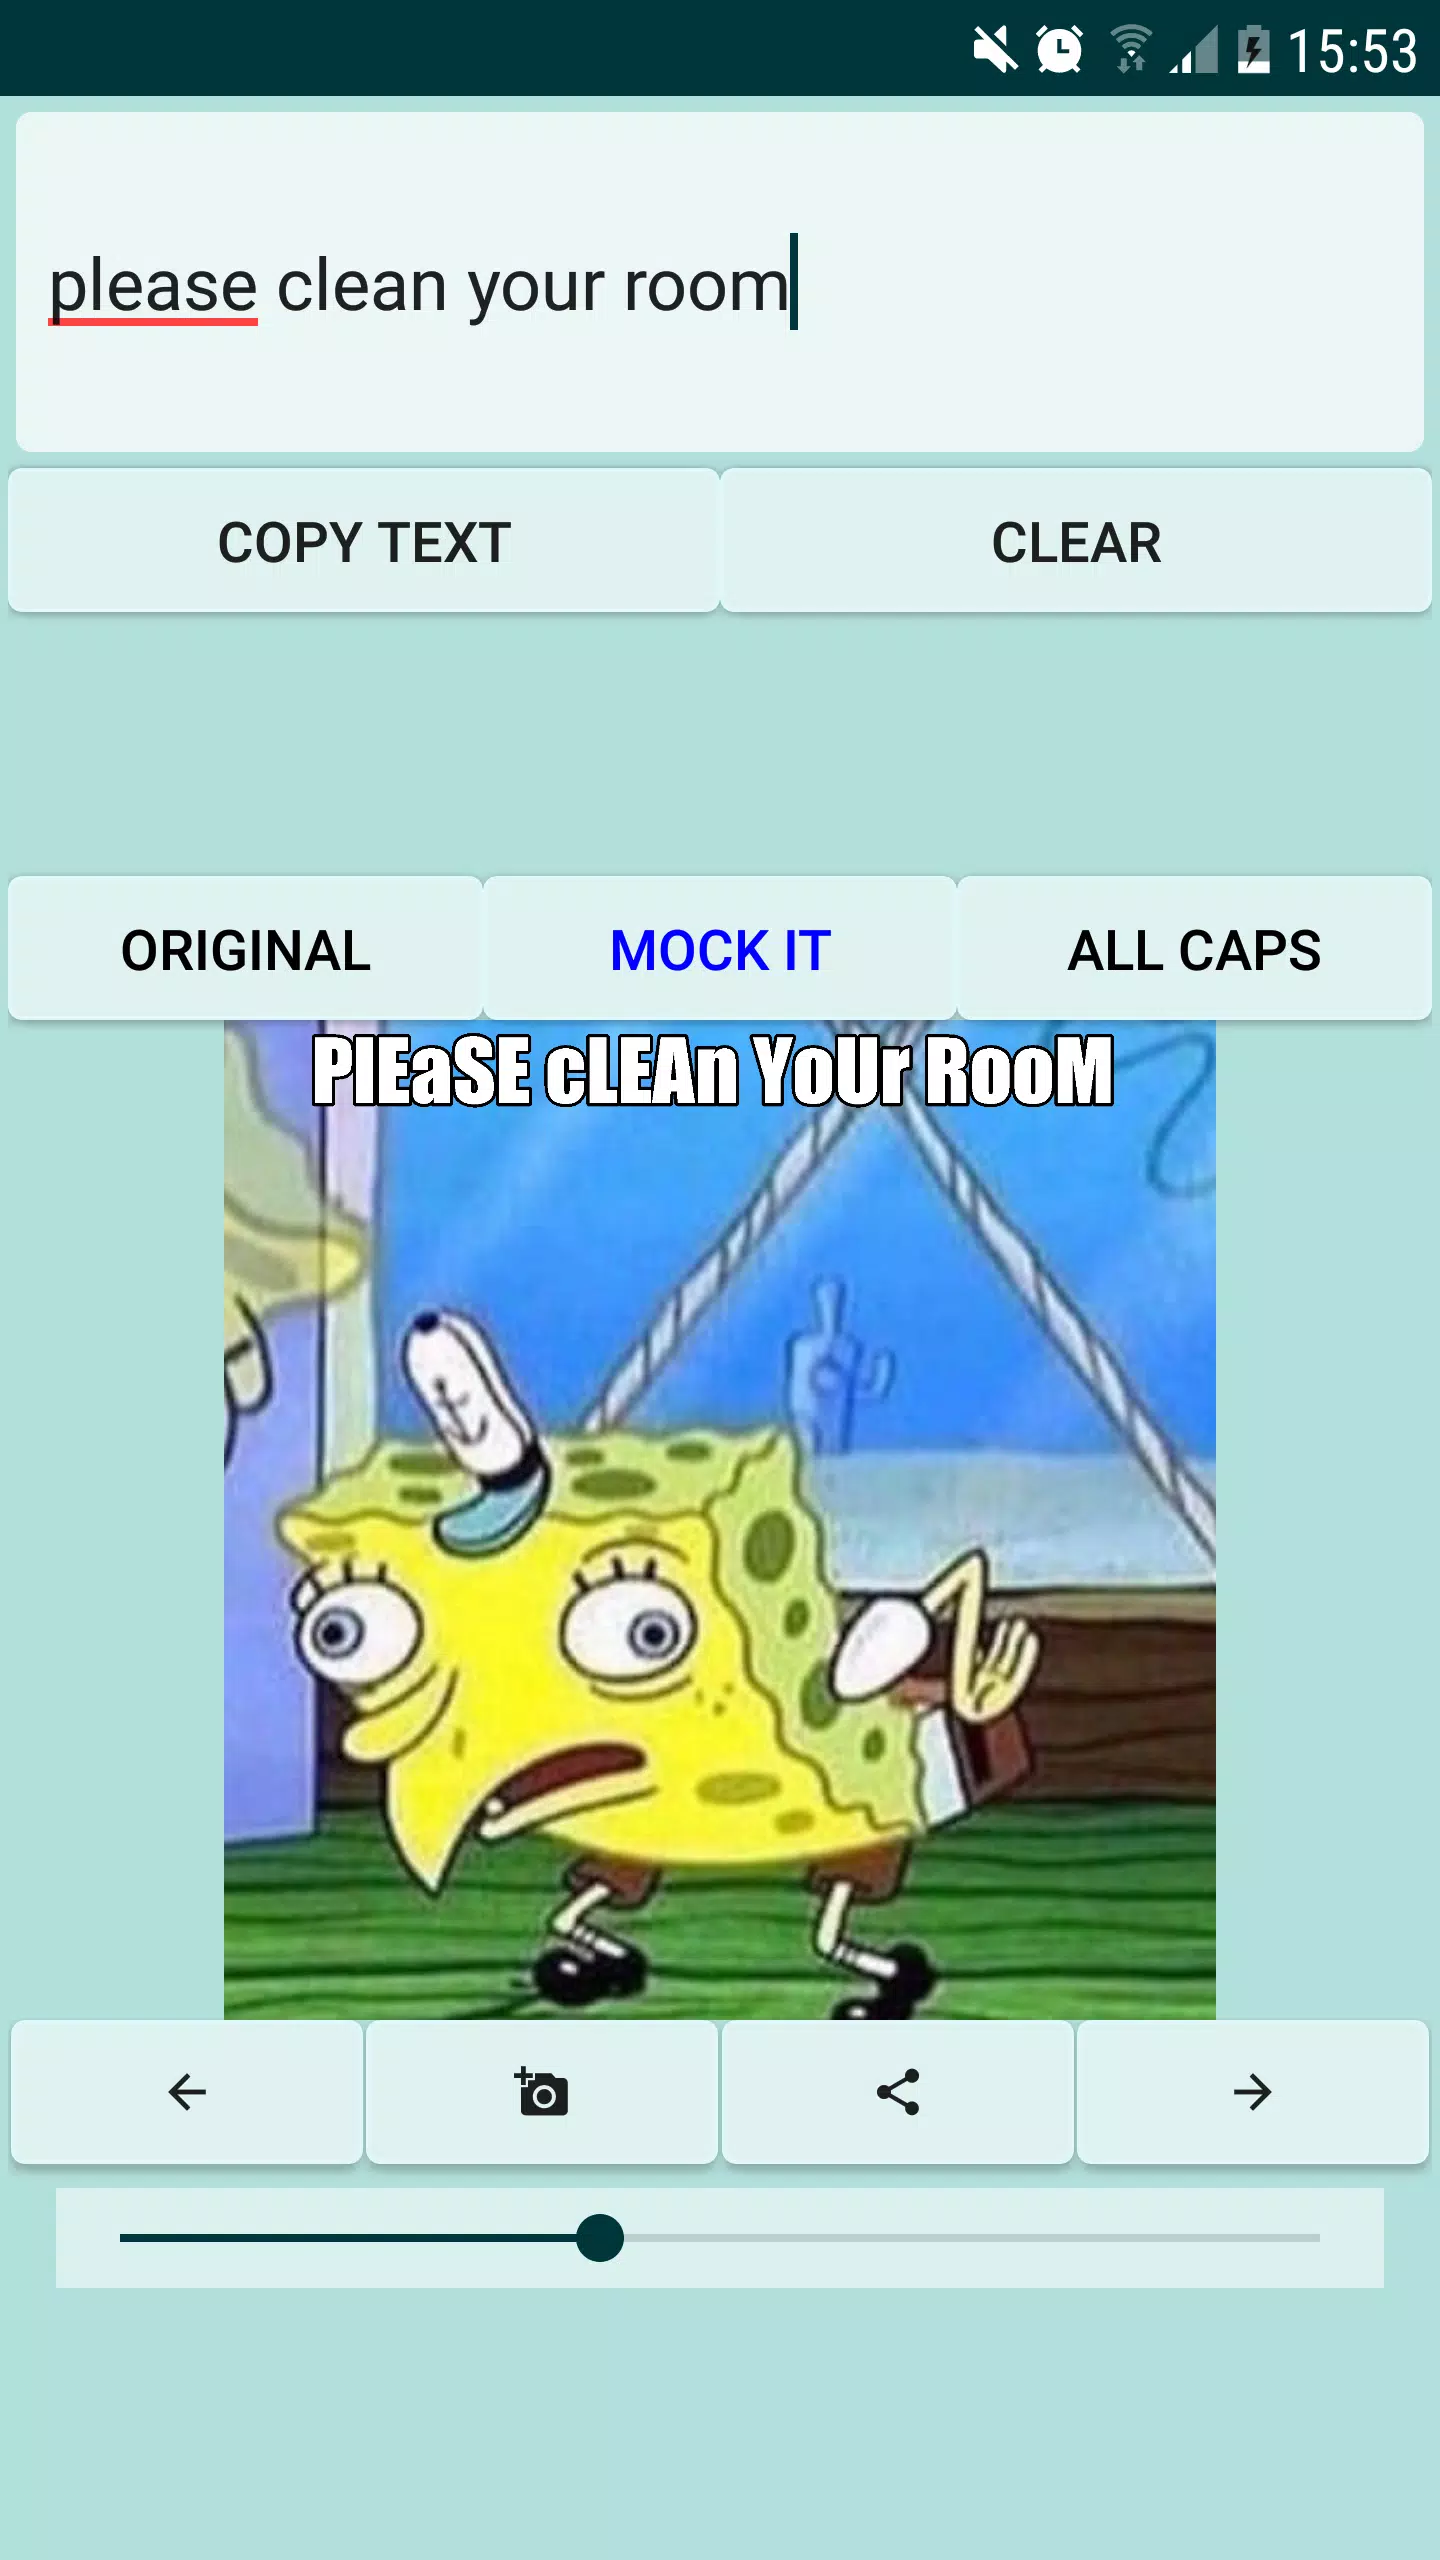 Spongebob Mocking meme generator APK für Android herunterladen